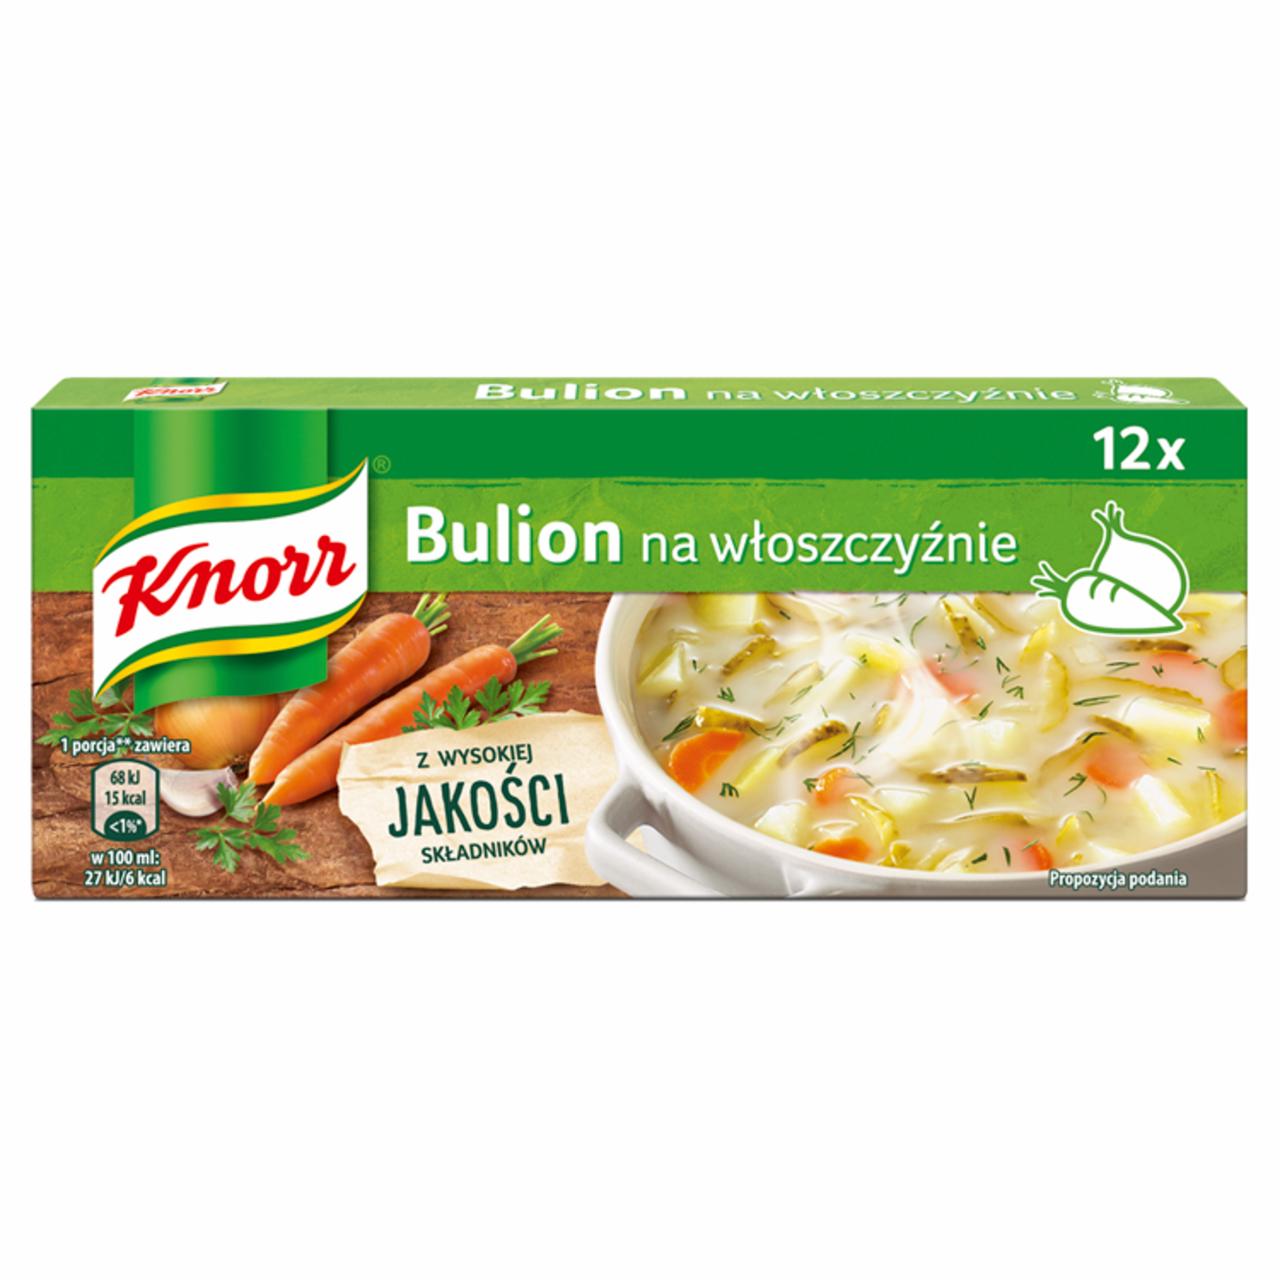 Zdjęcia - Knorr Rosół szlachetny drobiowo-warzywny 120 g (12 x 10 g)